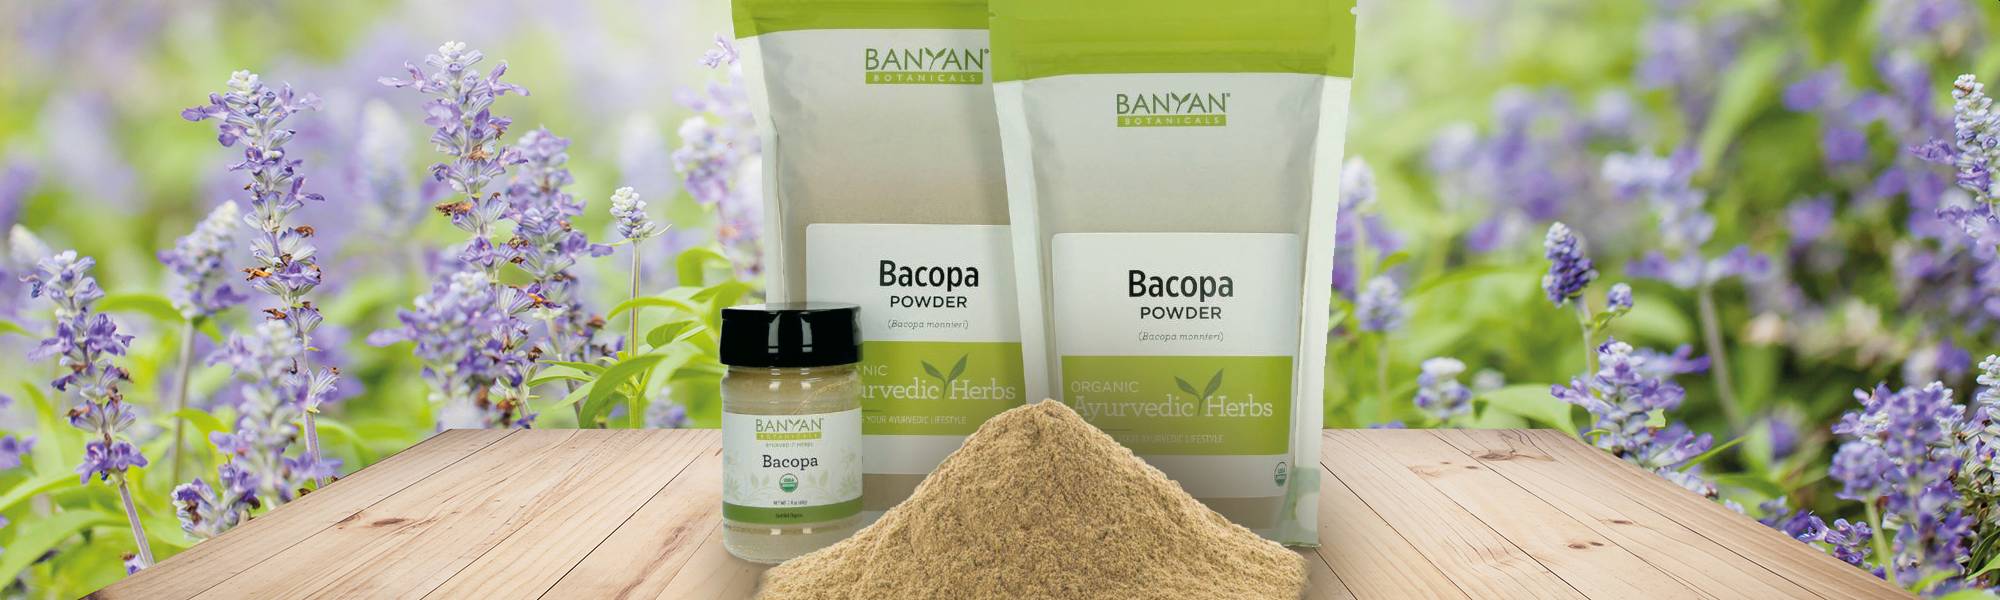 Banyan Botanicals Bacopa Powder